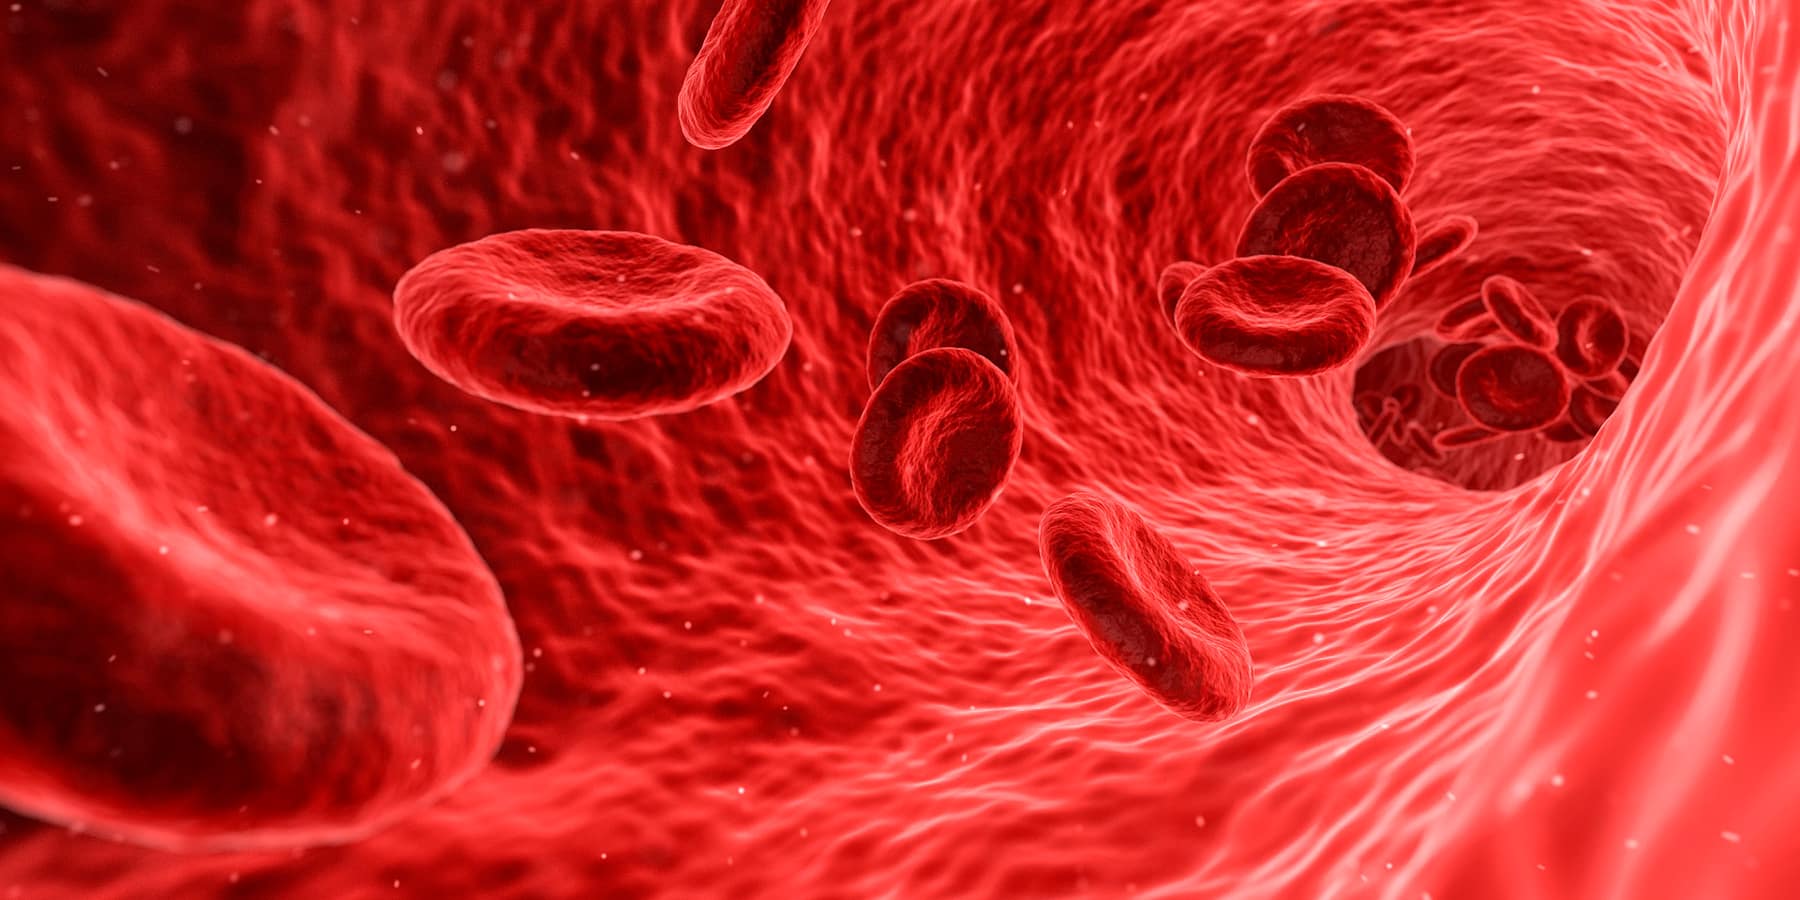 Hiperpotasemia: El peligro de tener el potasio alto en sangre